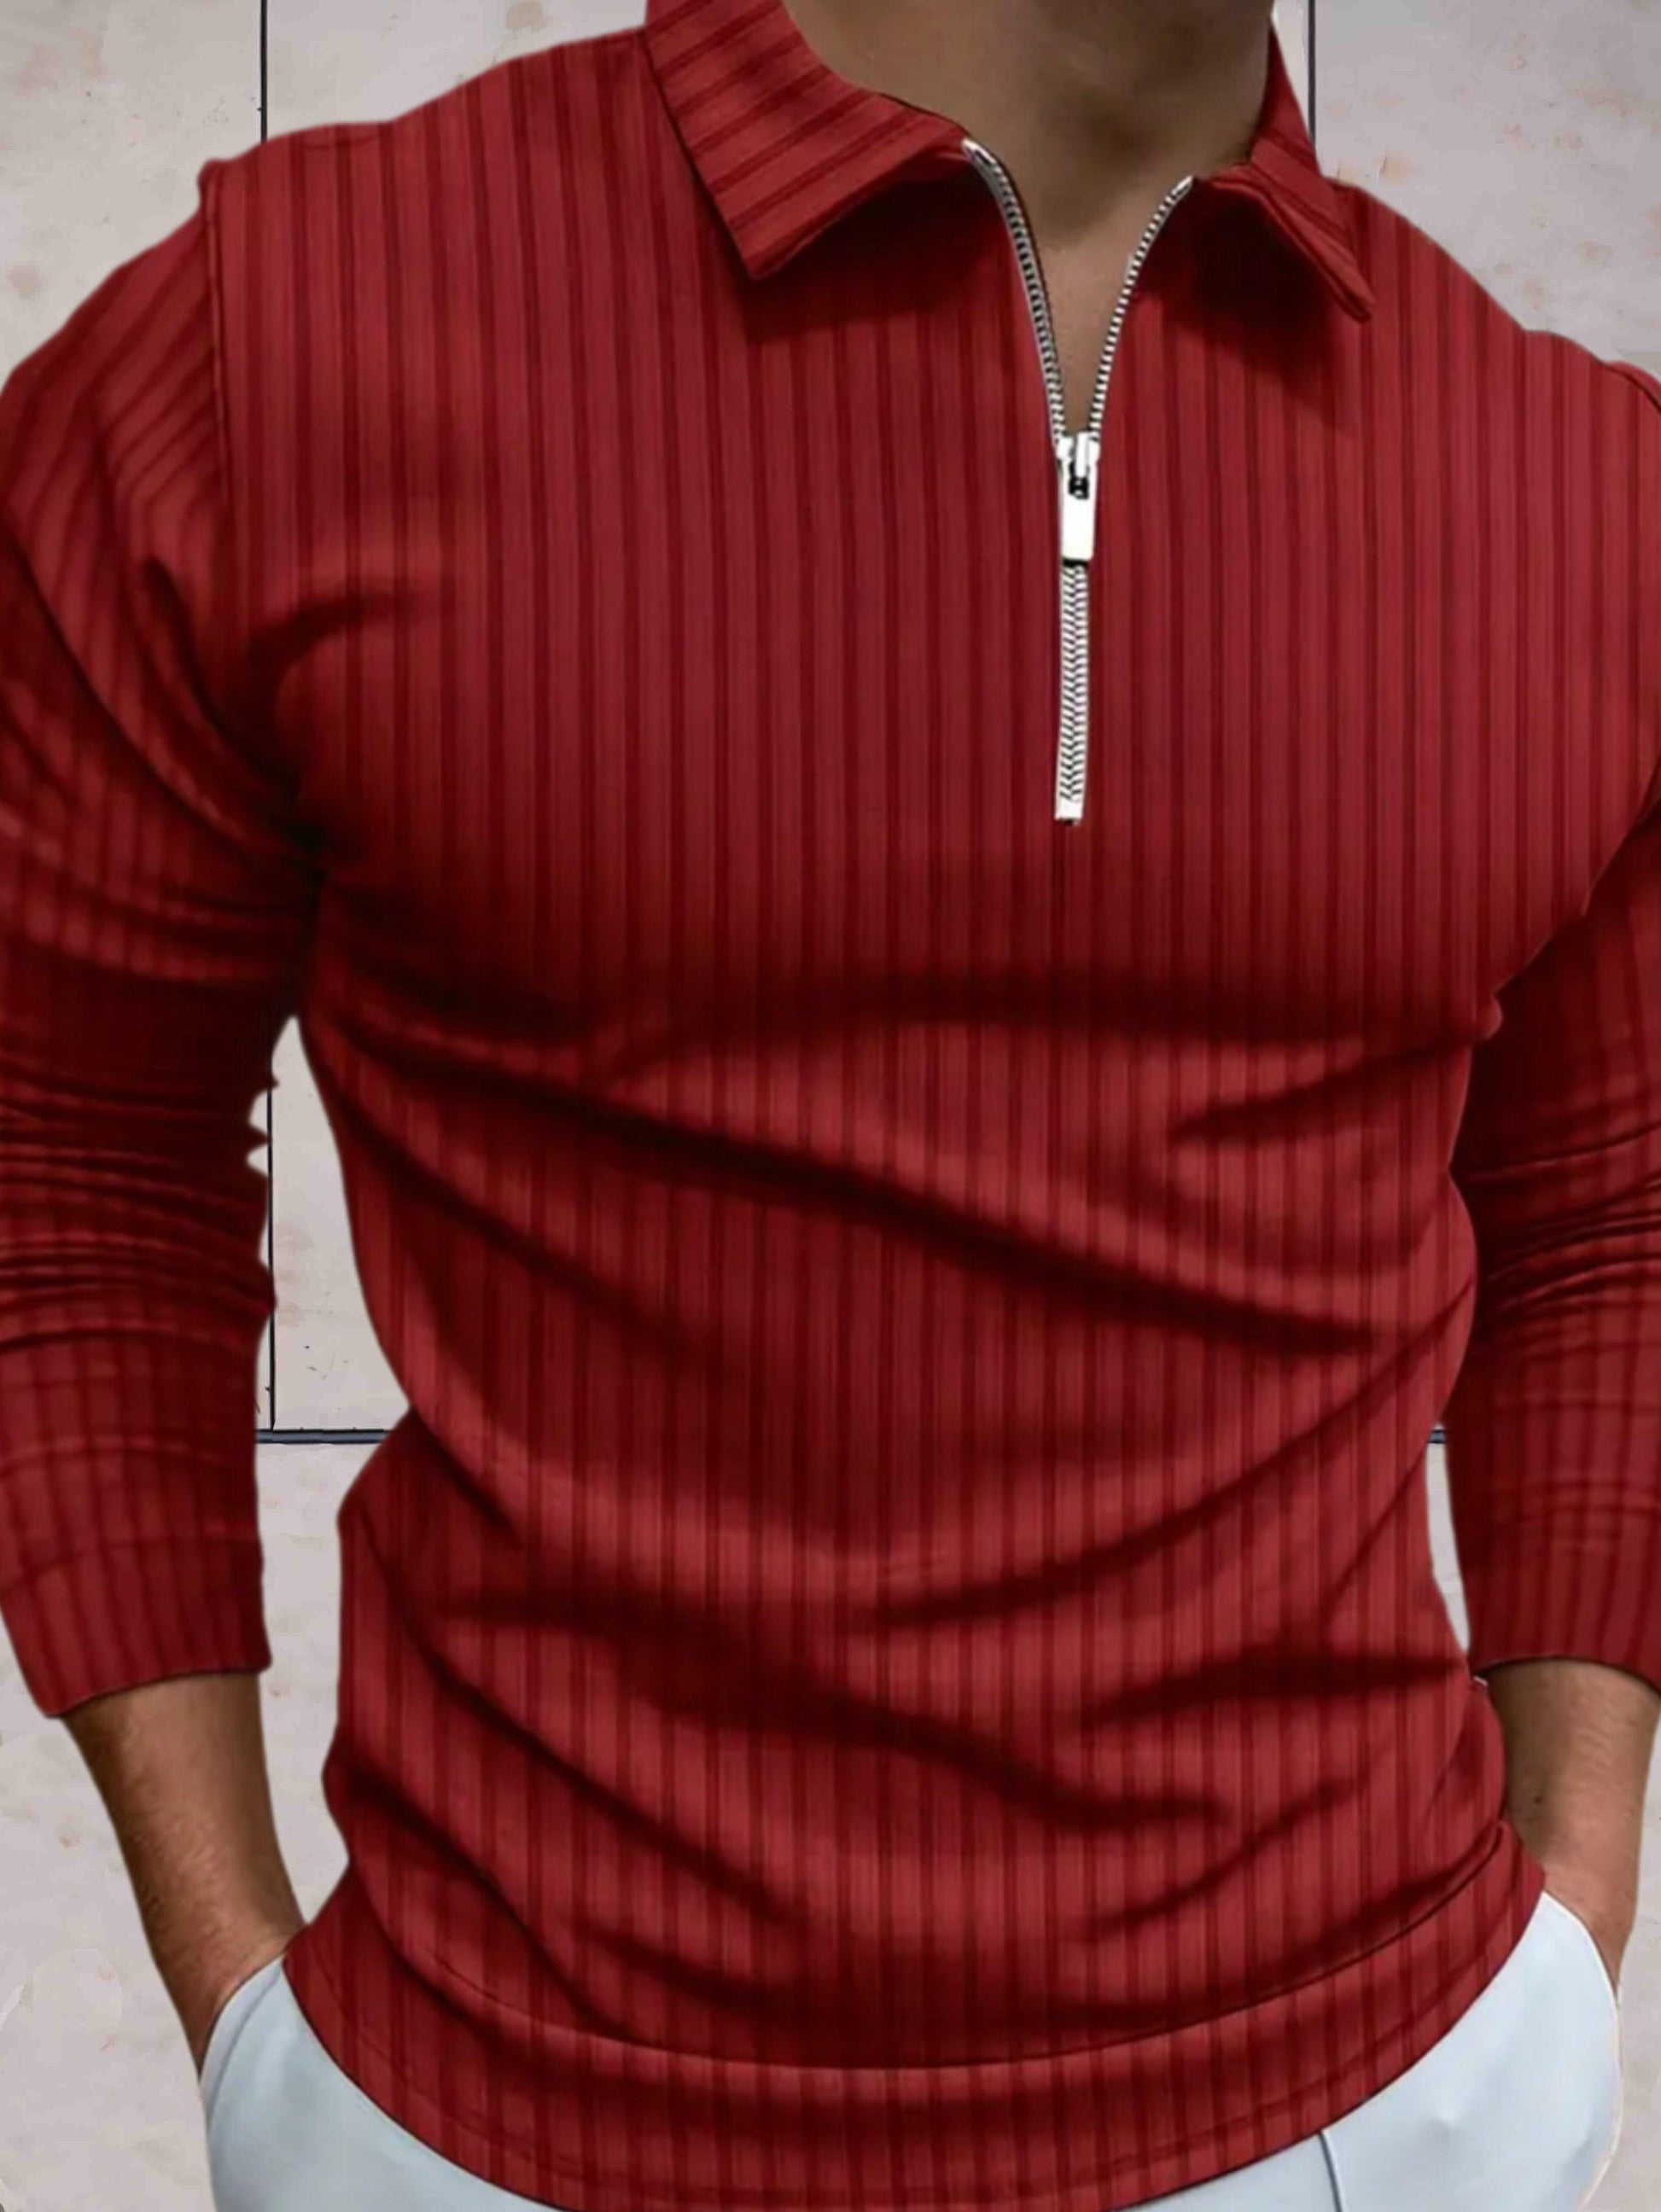 James - Winter warme sweater zipper kraag strepen comfortabel in meerdere kleuren - Sky-Sense